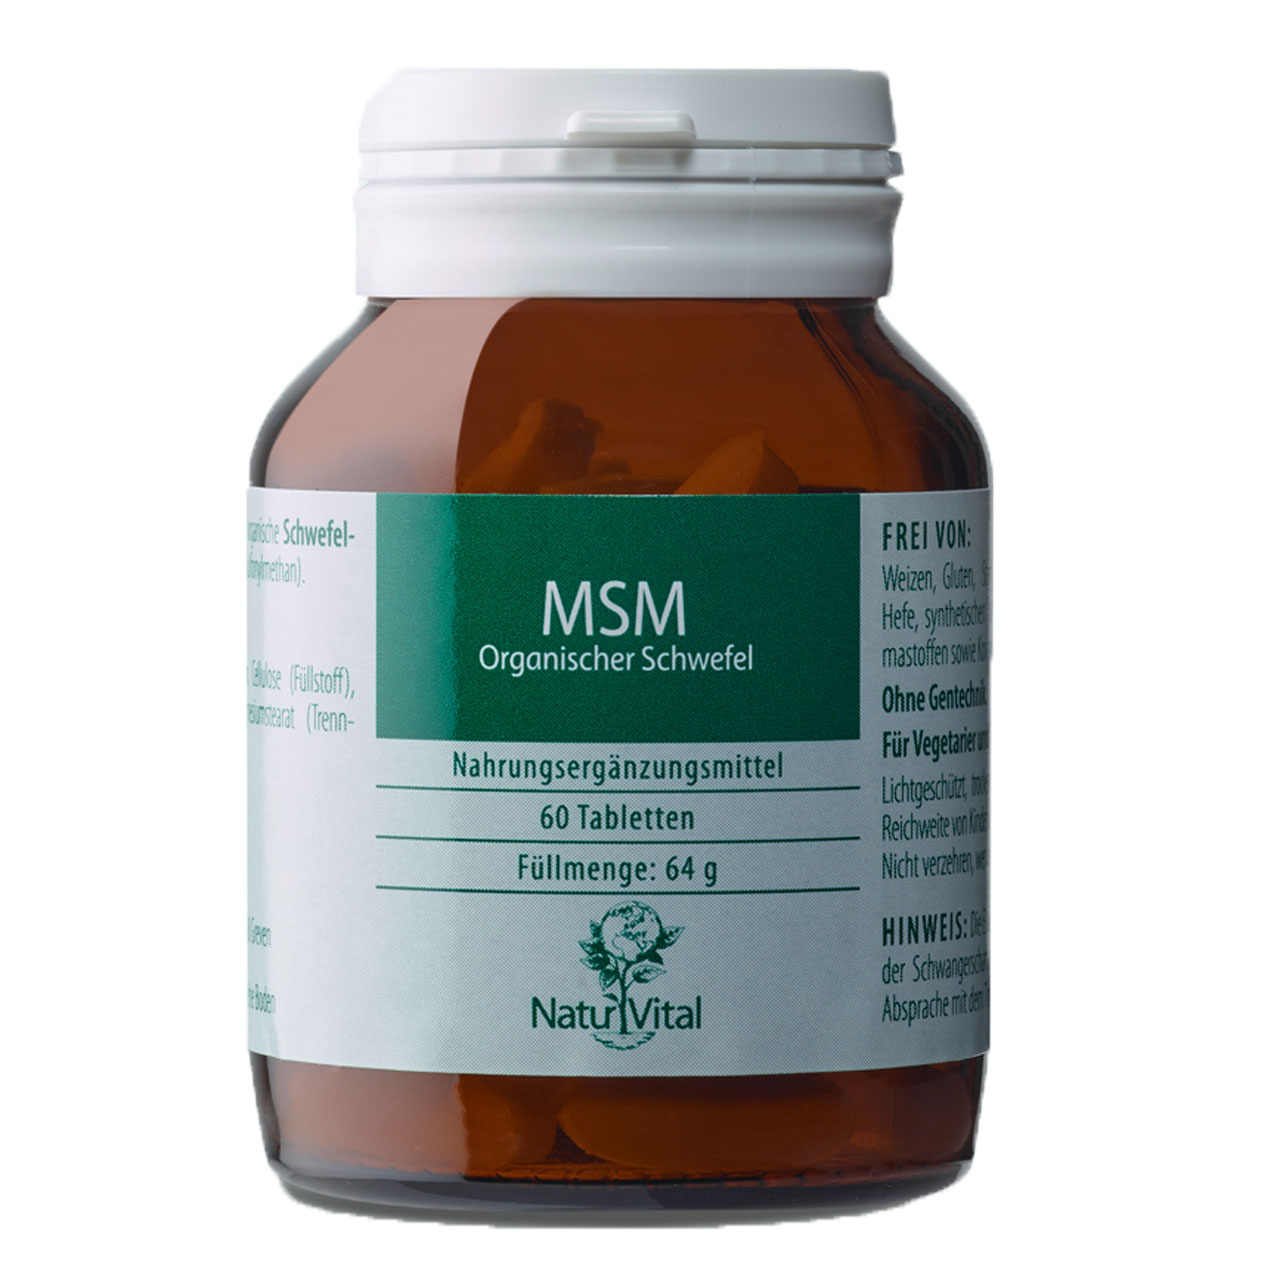 MSM Organischer Schwefel von Natur Vital beinhaltet 60 Tabletten